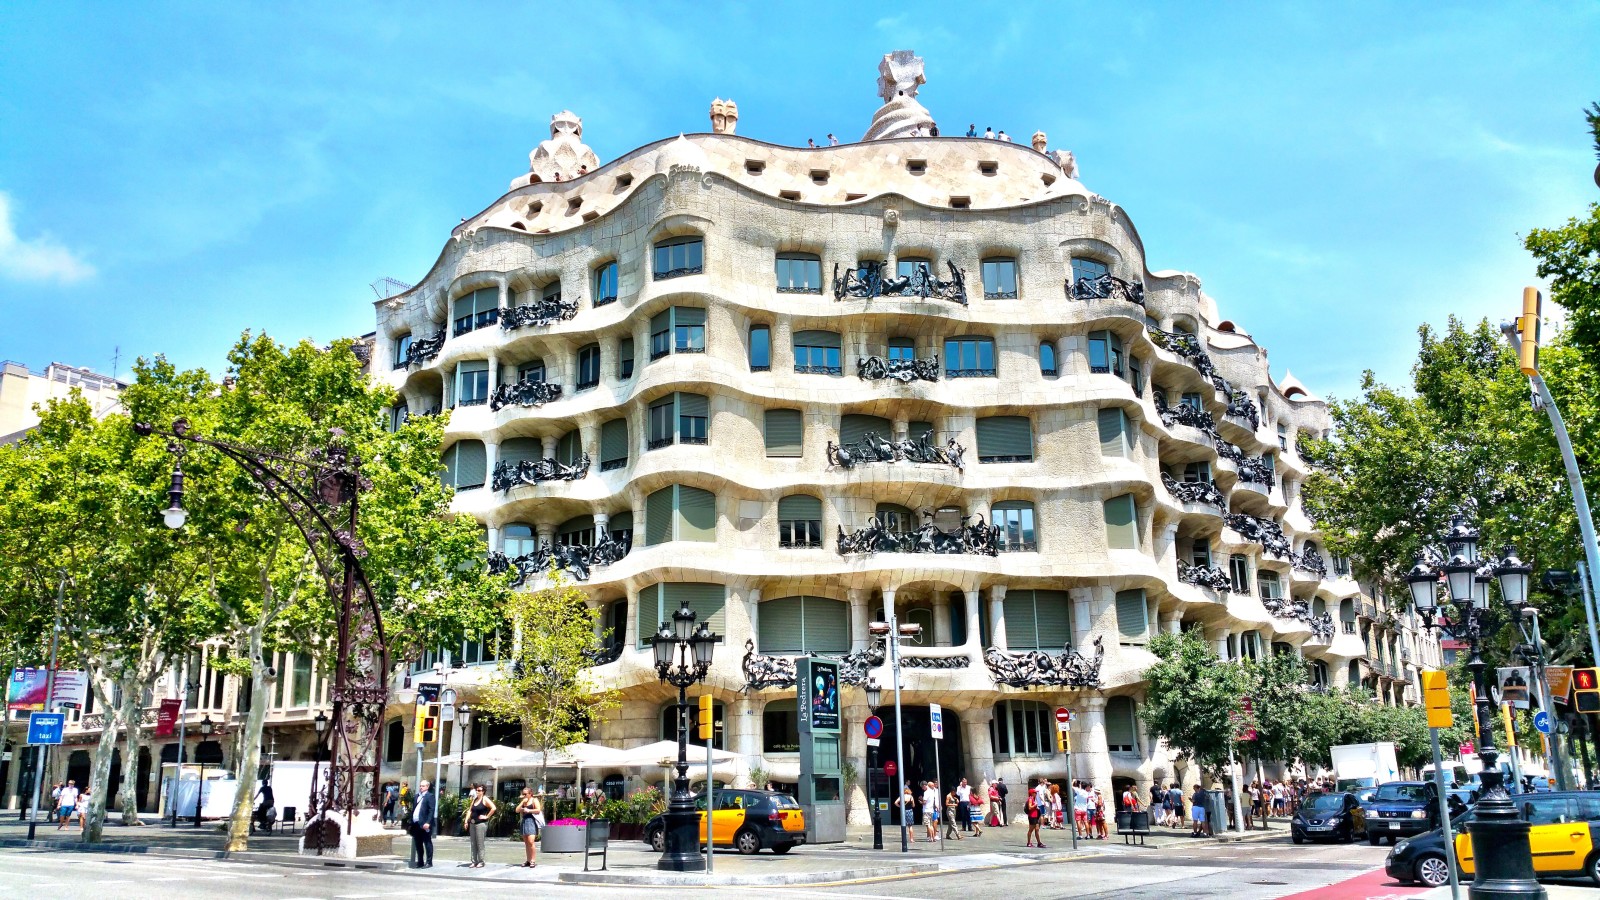 Casa Mila, one of Gaudi's premier architectural designs. 